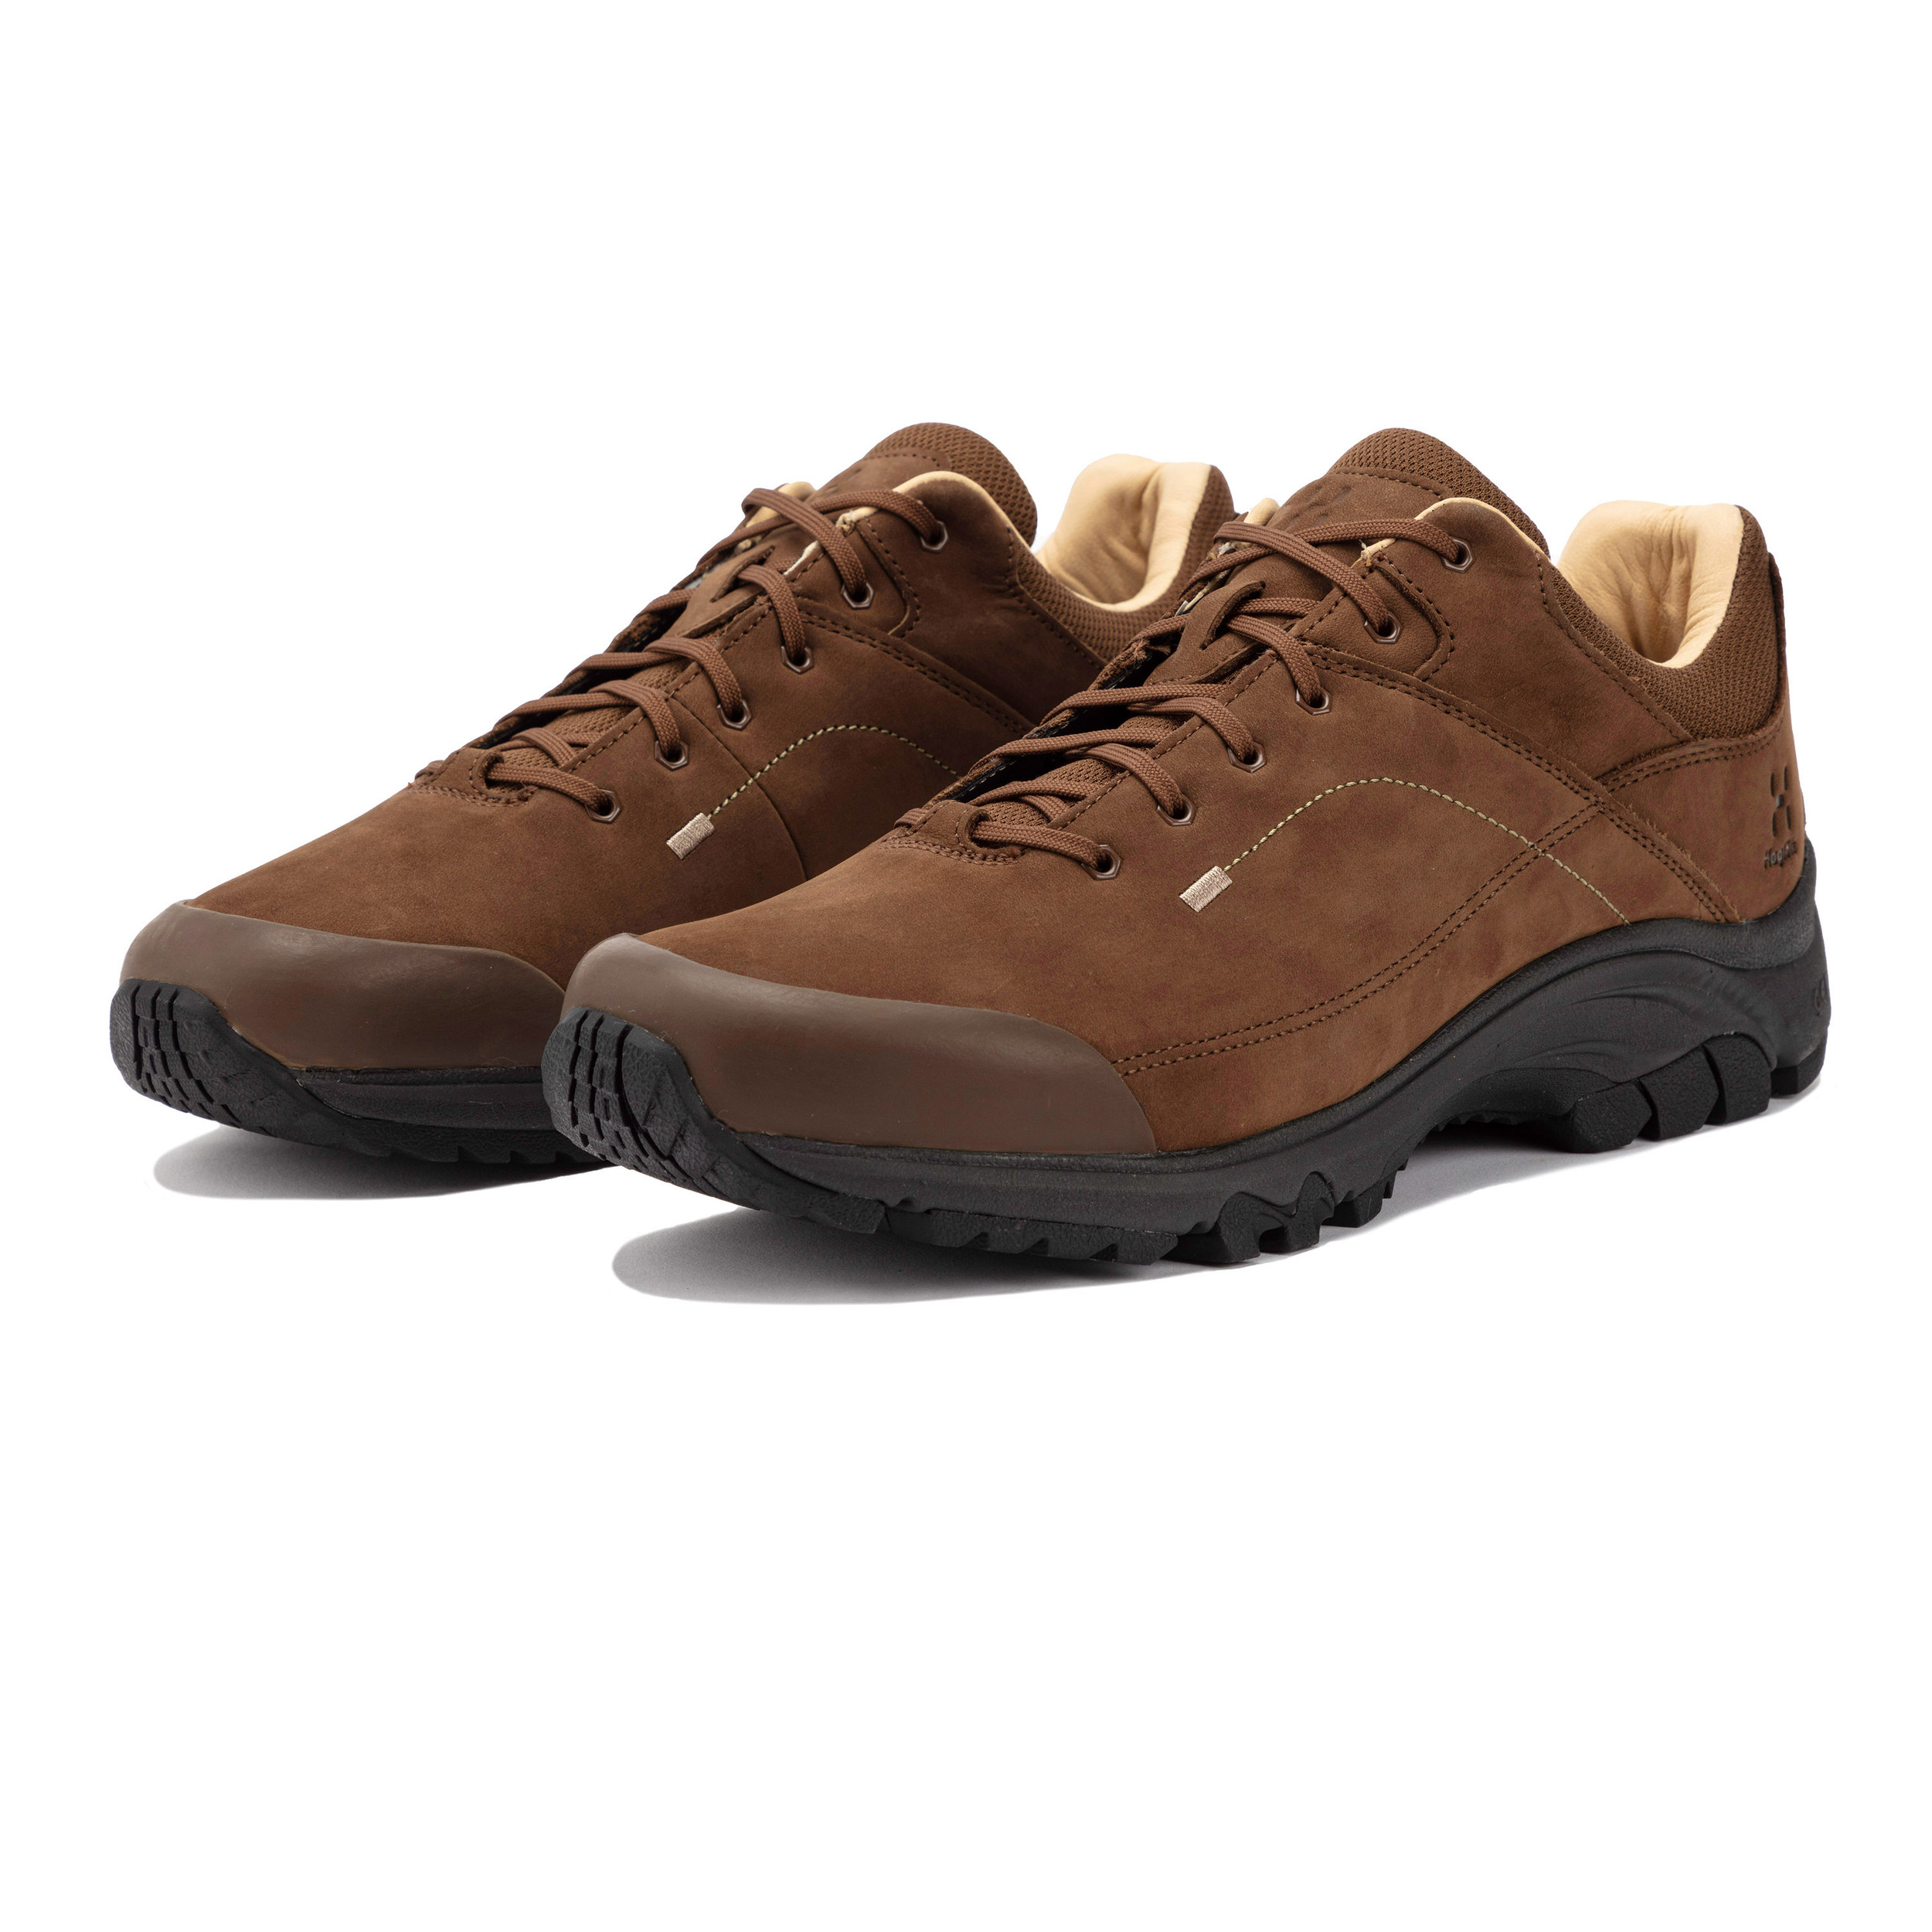 Haglofs Ridge Leather chaussures de marche